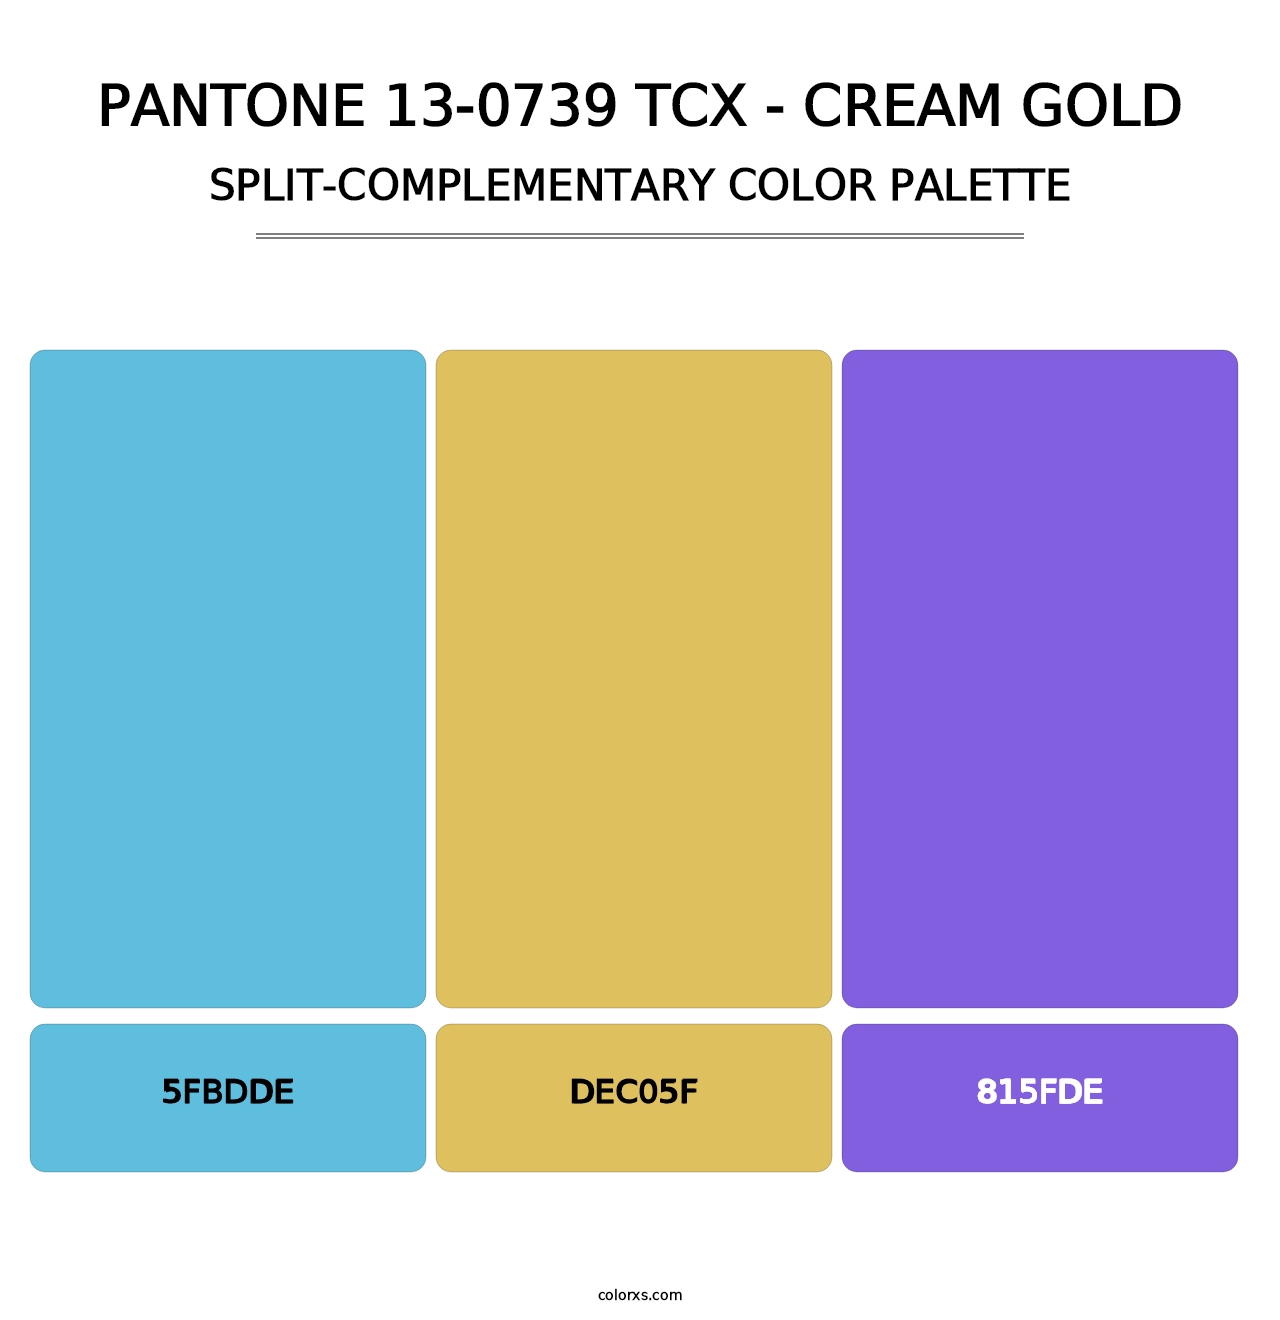 PANTONE 13-0739 TCX - Cream Gold - Split-Complementary Color Palette